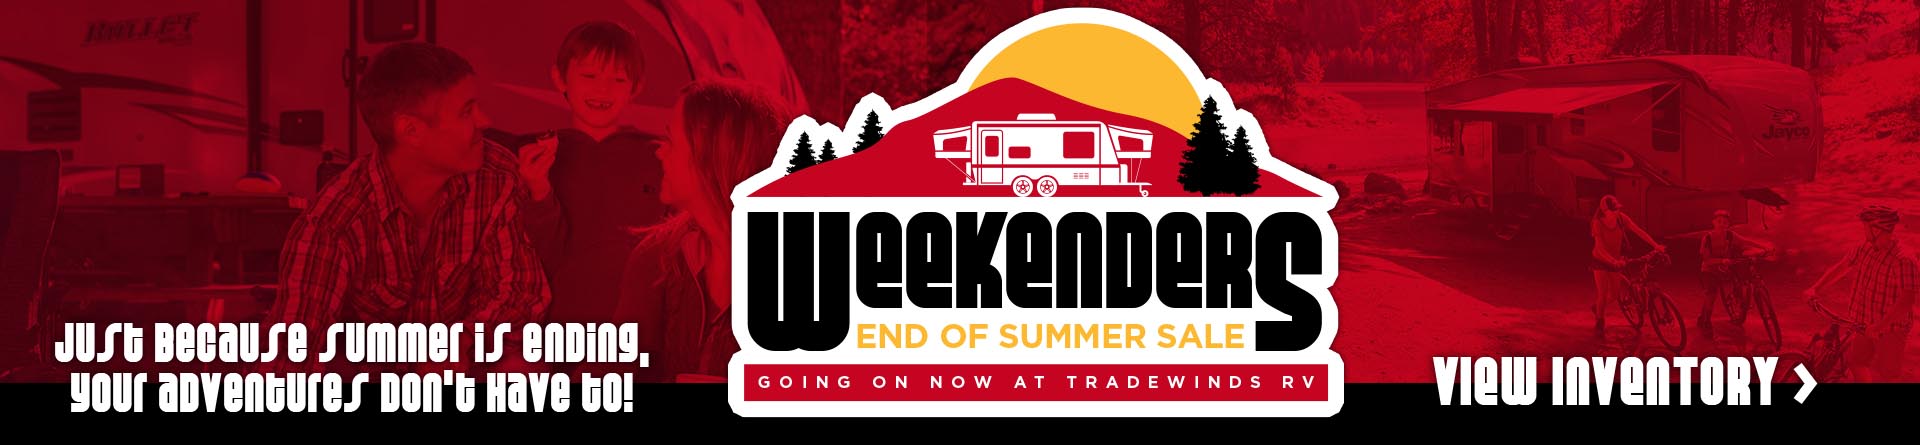 Weekenders End of Summer Sale